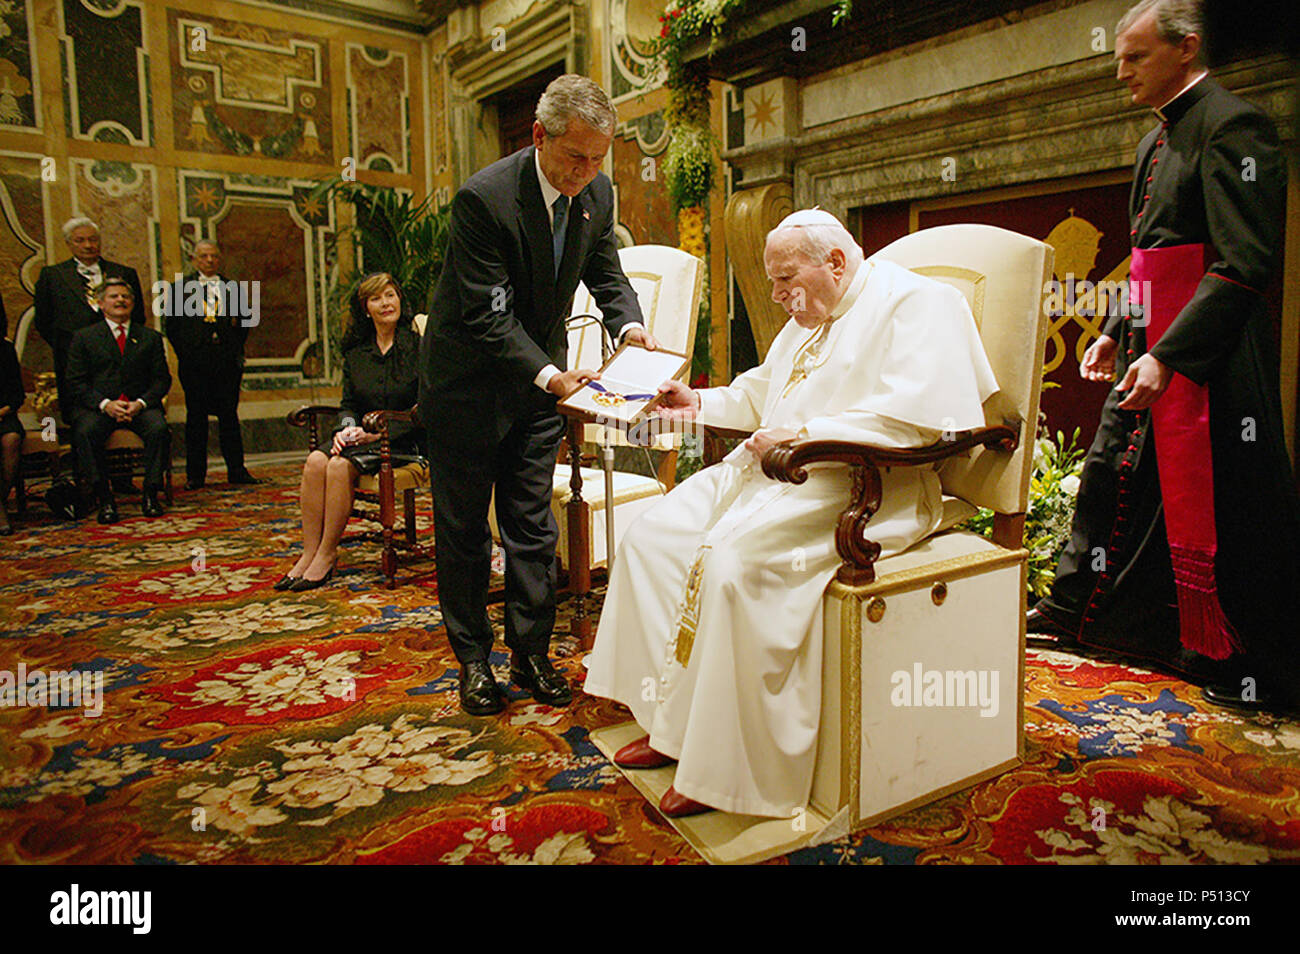 Le Président George Bush remet la Médaille de la Liberté au Pape Jean Paul II le 4 juin 2004, au cours d'une visite au Vatican, à Rome, Italie. Photo par Eric Draper, gracieuseté de la George Bush Presidential Library and Museum Banque D'Images